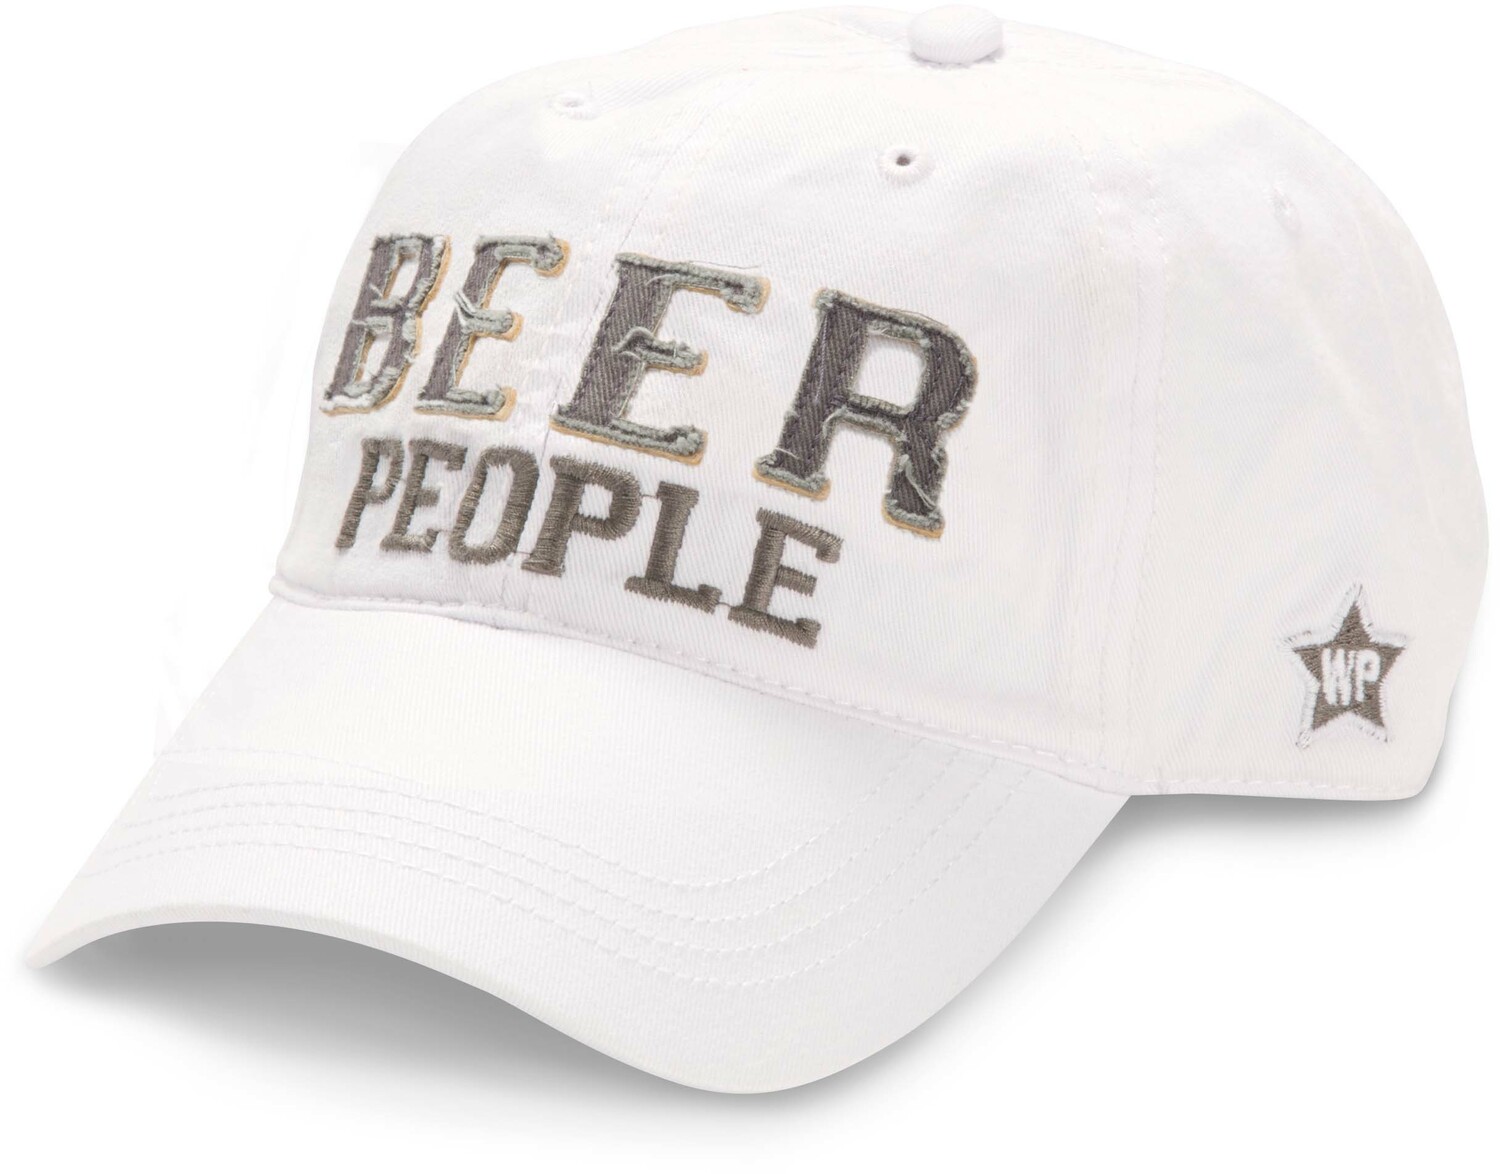 Beer People by We People - Beer People White Snapback Beer Hat